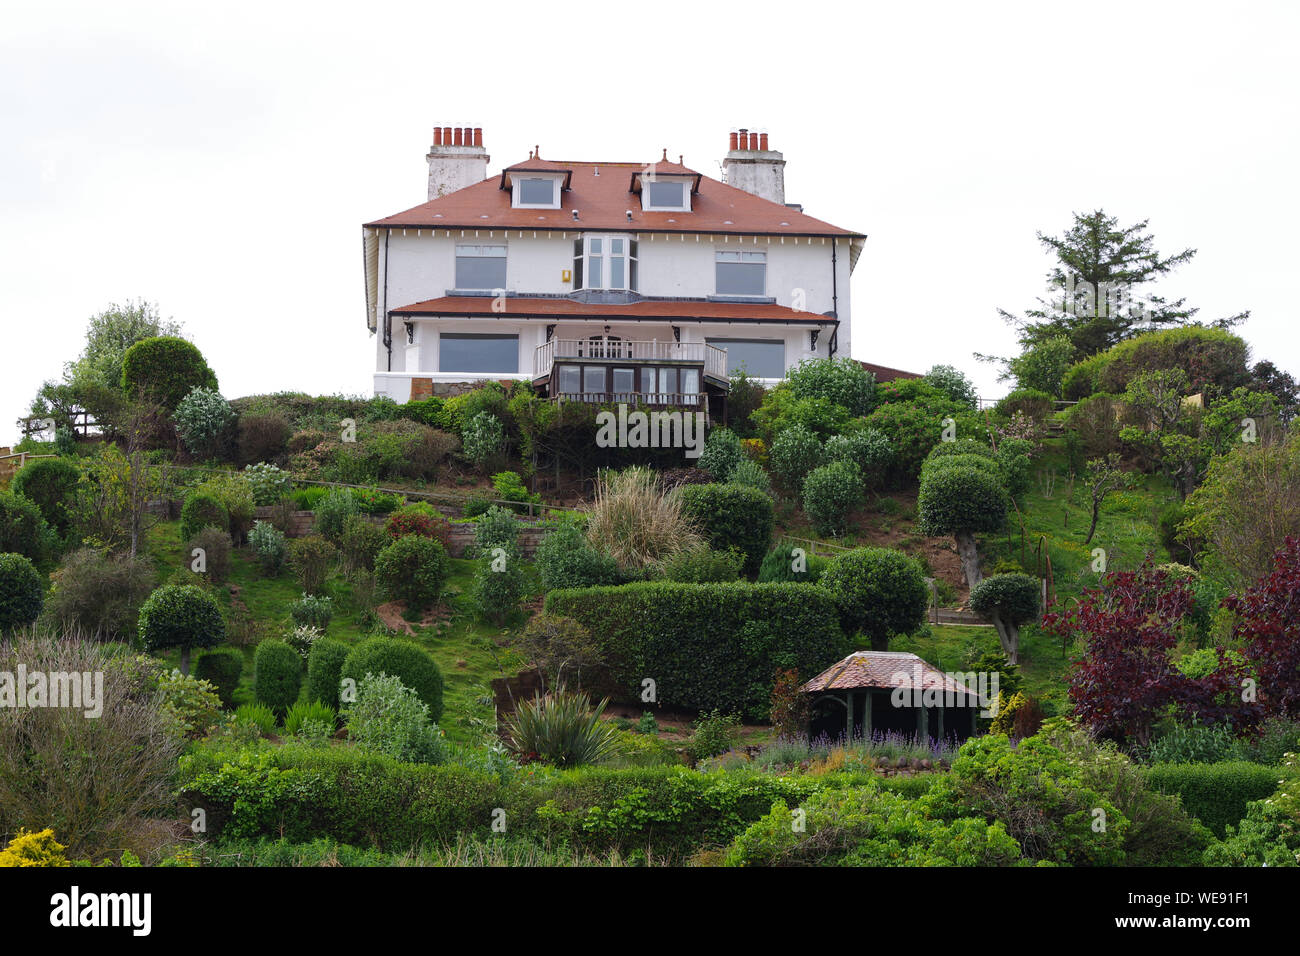 Das grosse Haus auf dem Hügel in Coldingham Bay. Coldingham Bay ist ein Einlass in der Nordsee, in den schottischen Borders Stockfoto